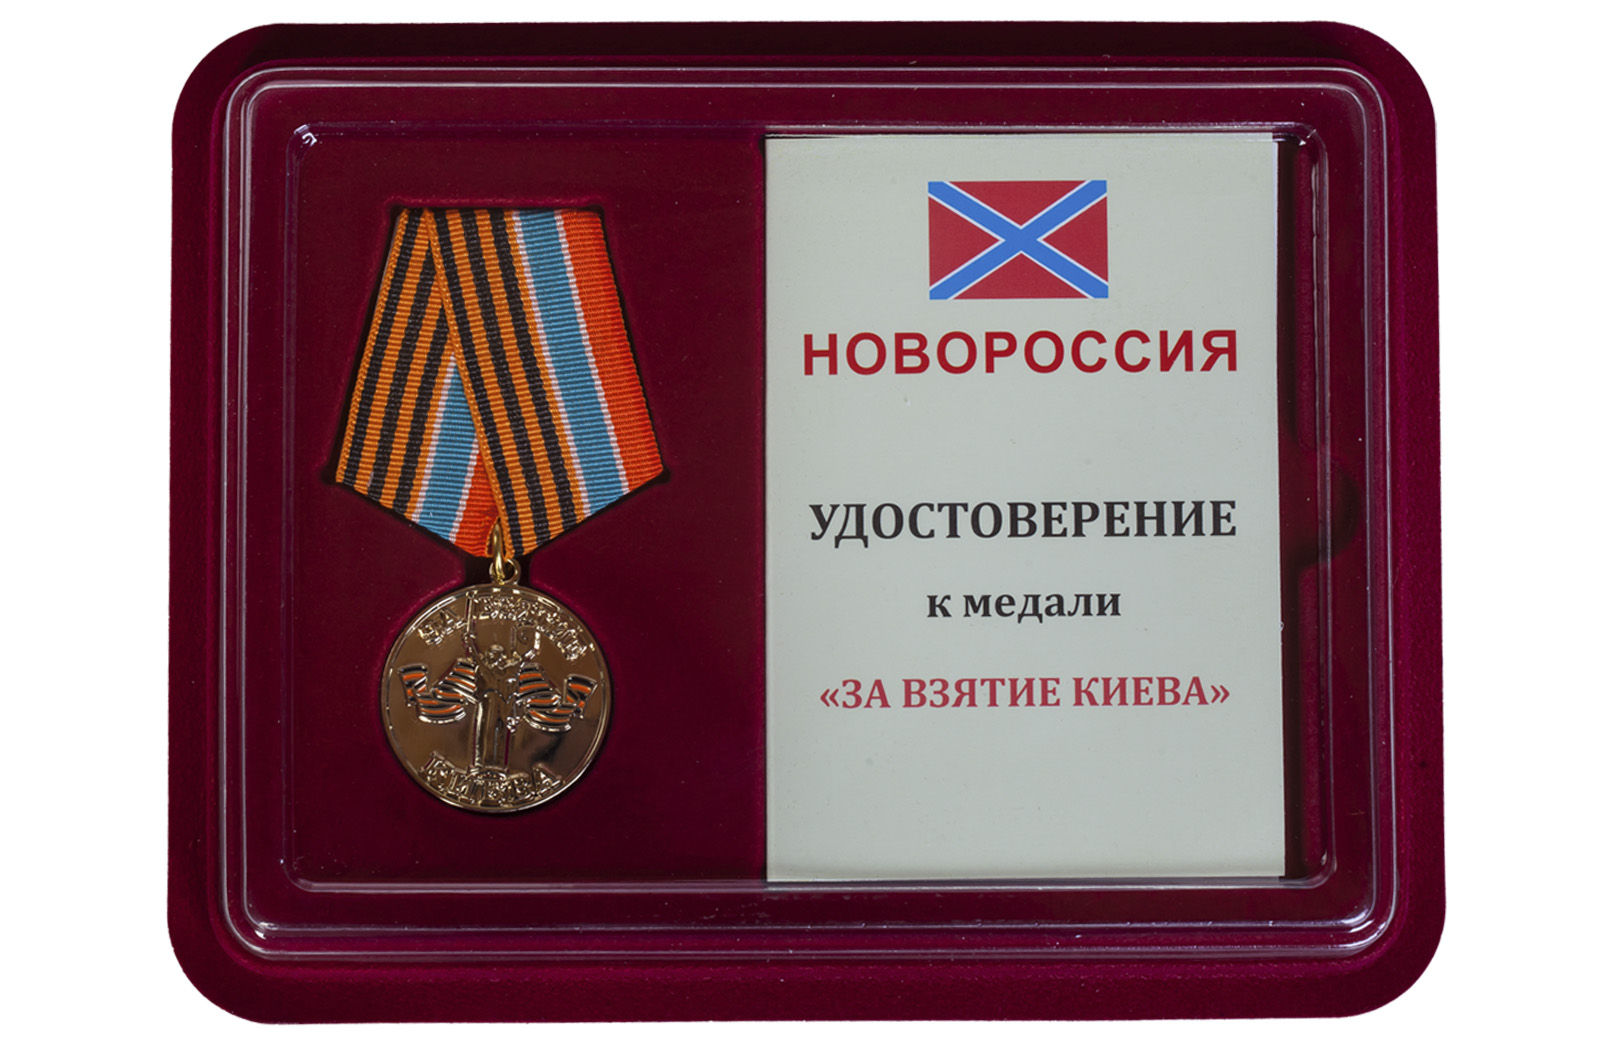 Купить медаль За взятие Киева Новороссия в подарок выгодно